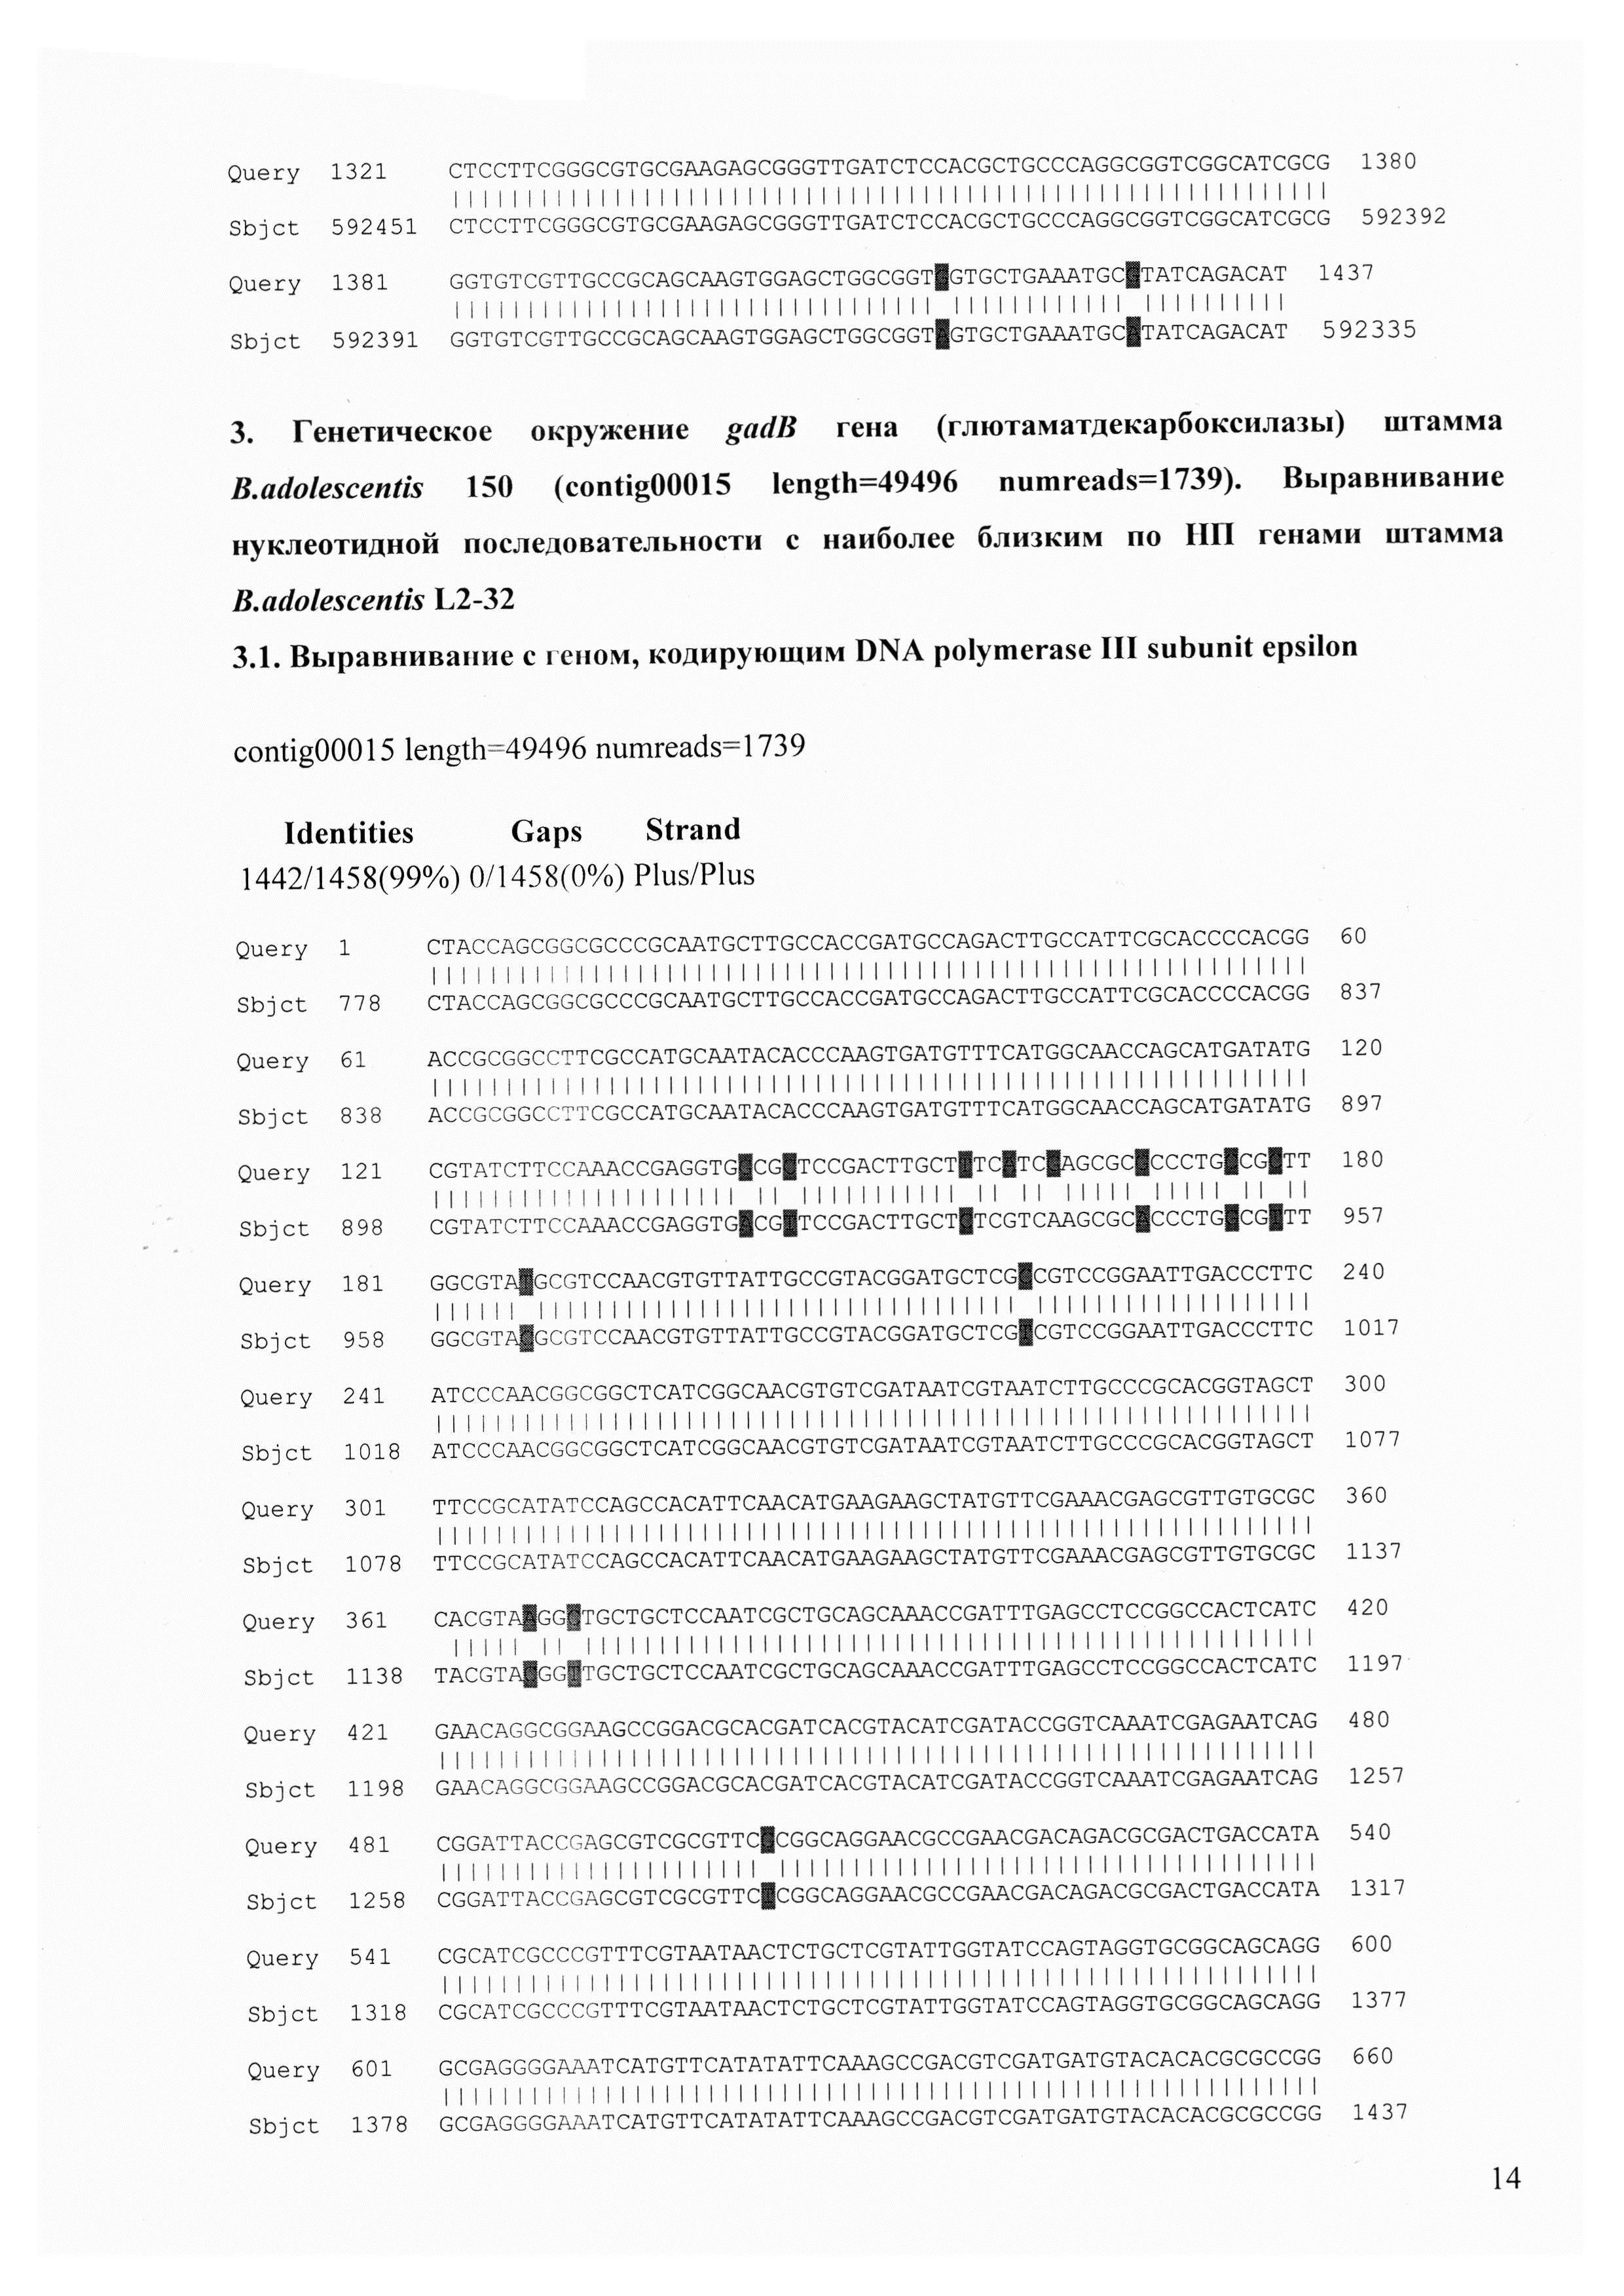 Штаммы Bifidobacterium adolescentis 150 и Bifidobacterium angulatum GT 102, синтезирующие гамма-аминомасляную кислоту